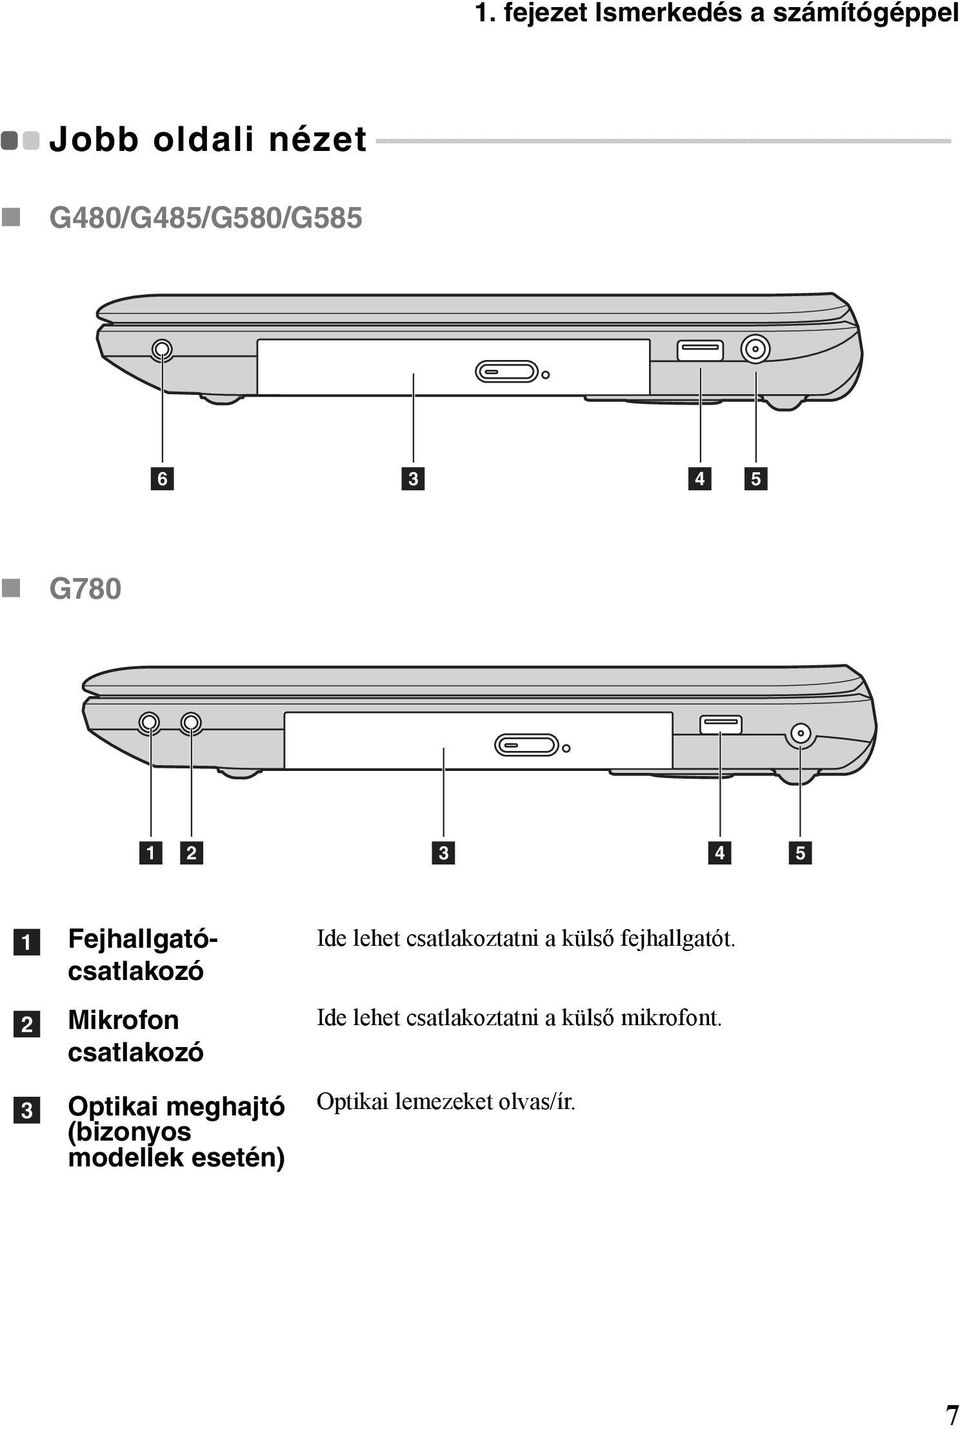 6 3 4 5 G780 1 2 3 4 5 a b c Fejhallgatócsatlakozó Mikrofon csatlakozó Optikai meghajtó (bizonyos modellek esetén)